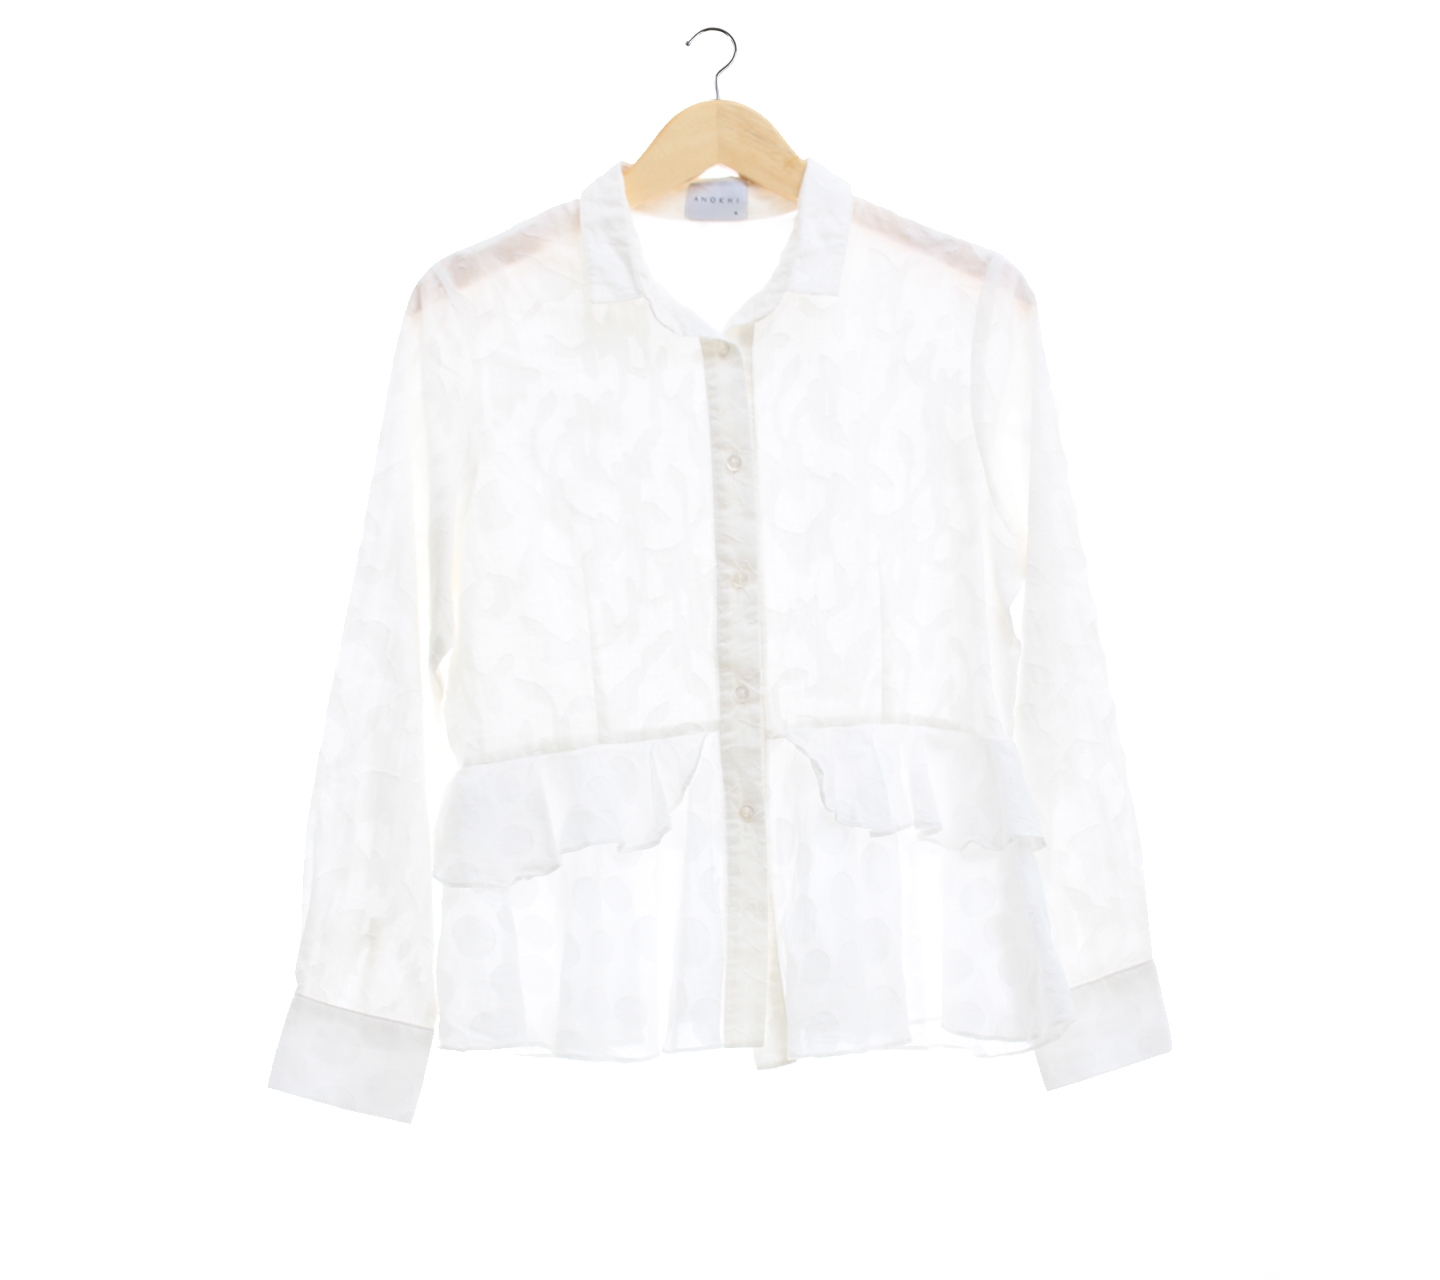 Anokhi Patterned White Shirt